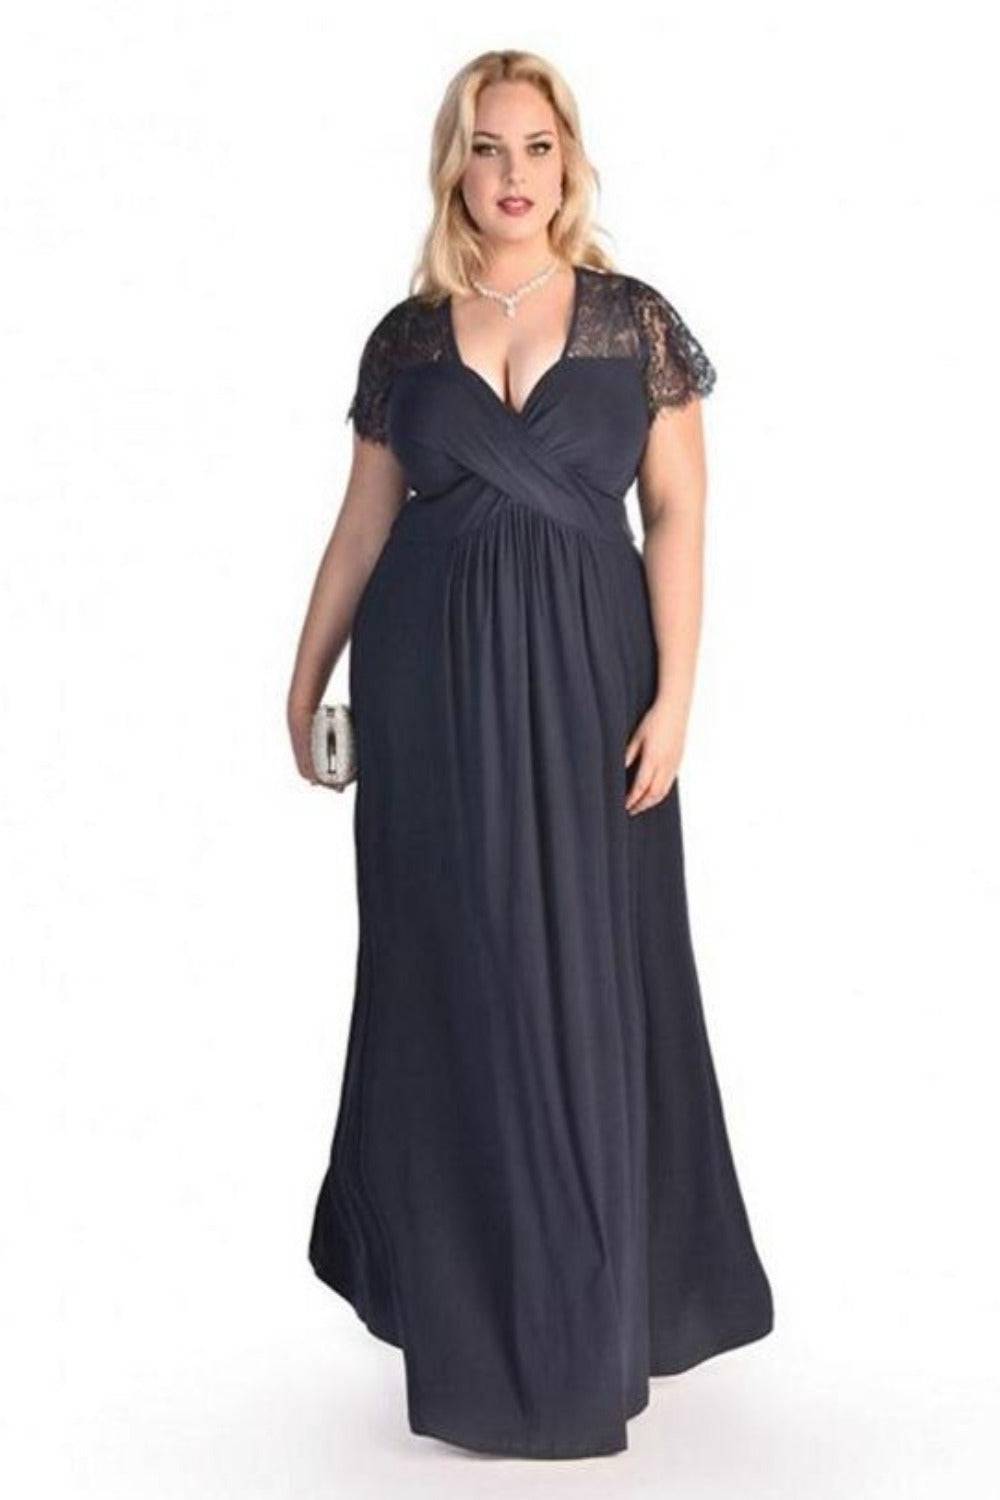 Plus Size Floral Lace Maxi Dress - TGC Boutique - Long Dress